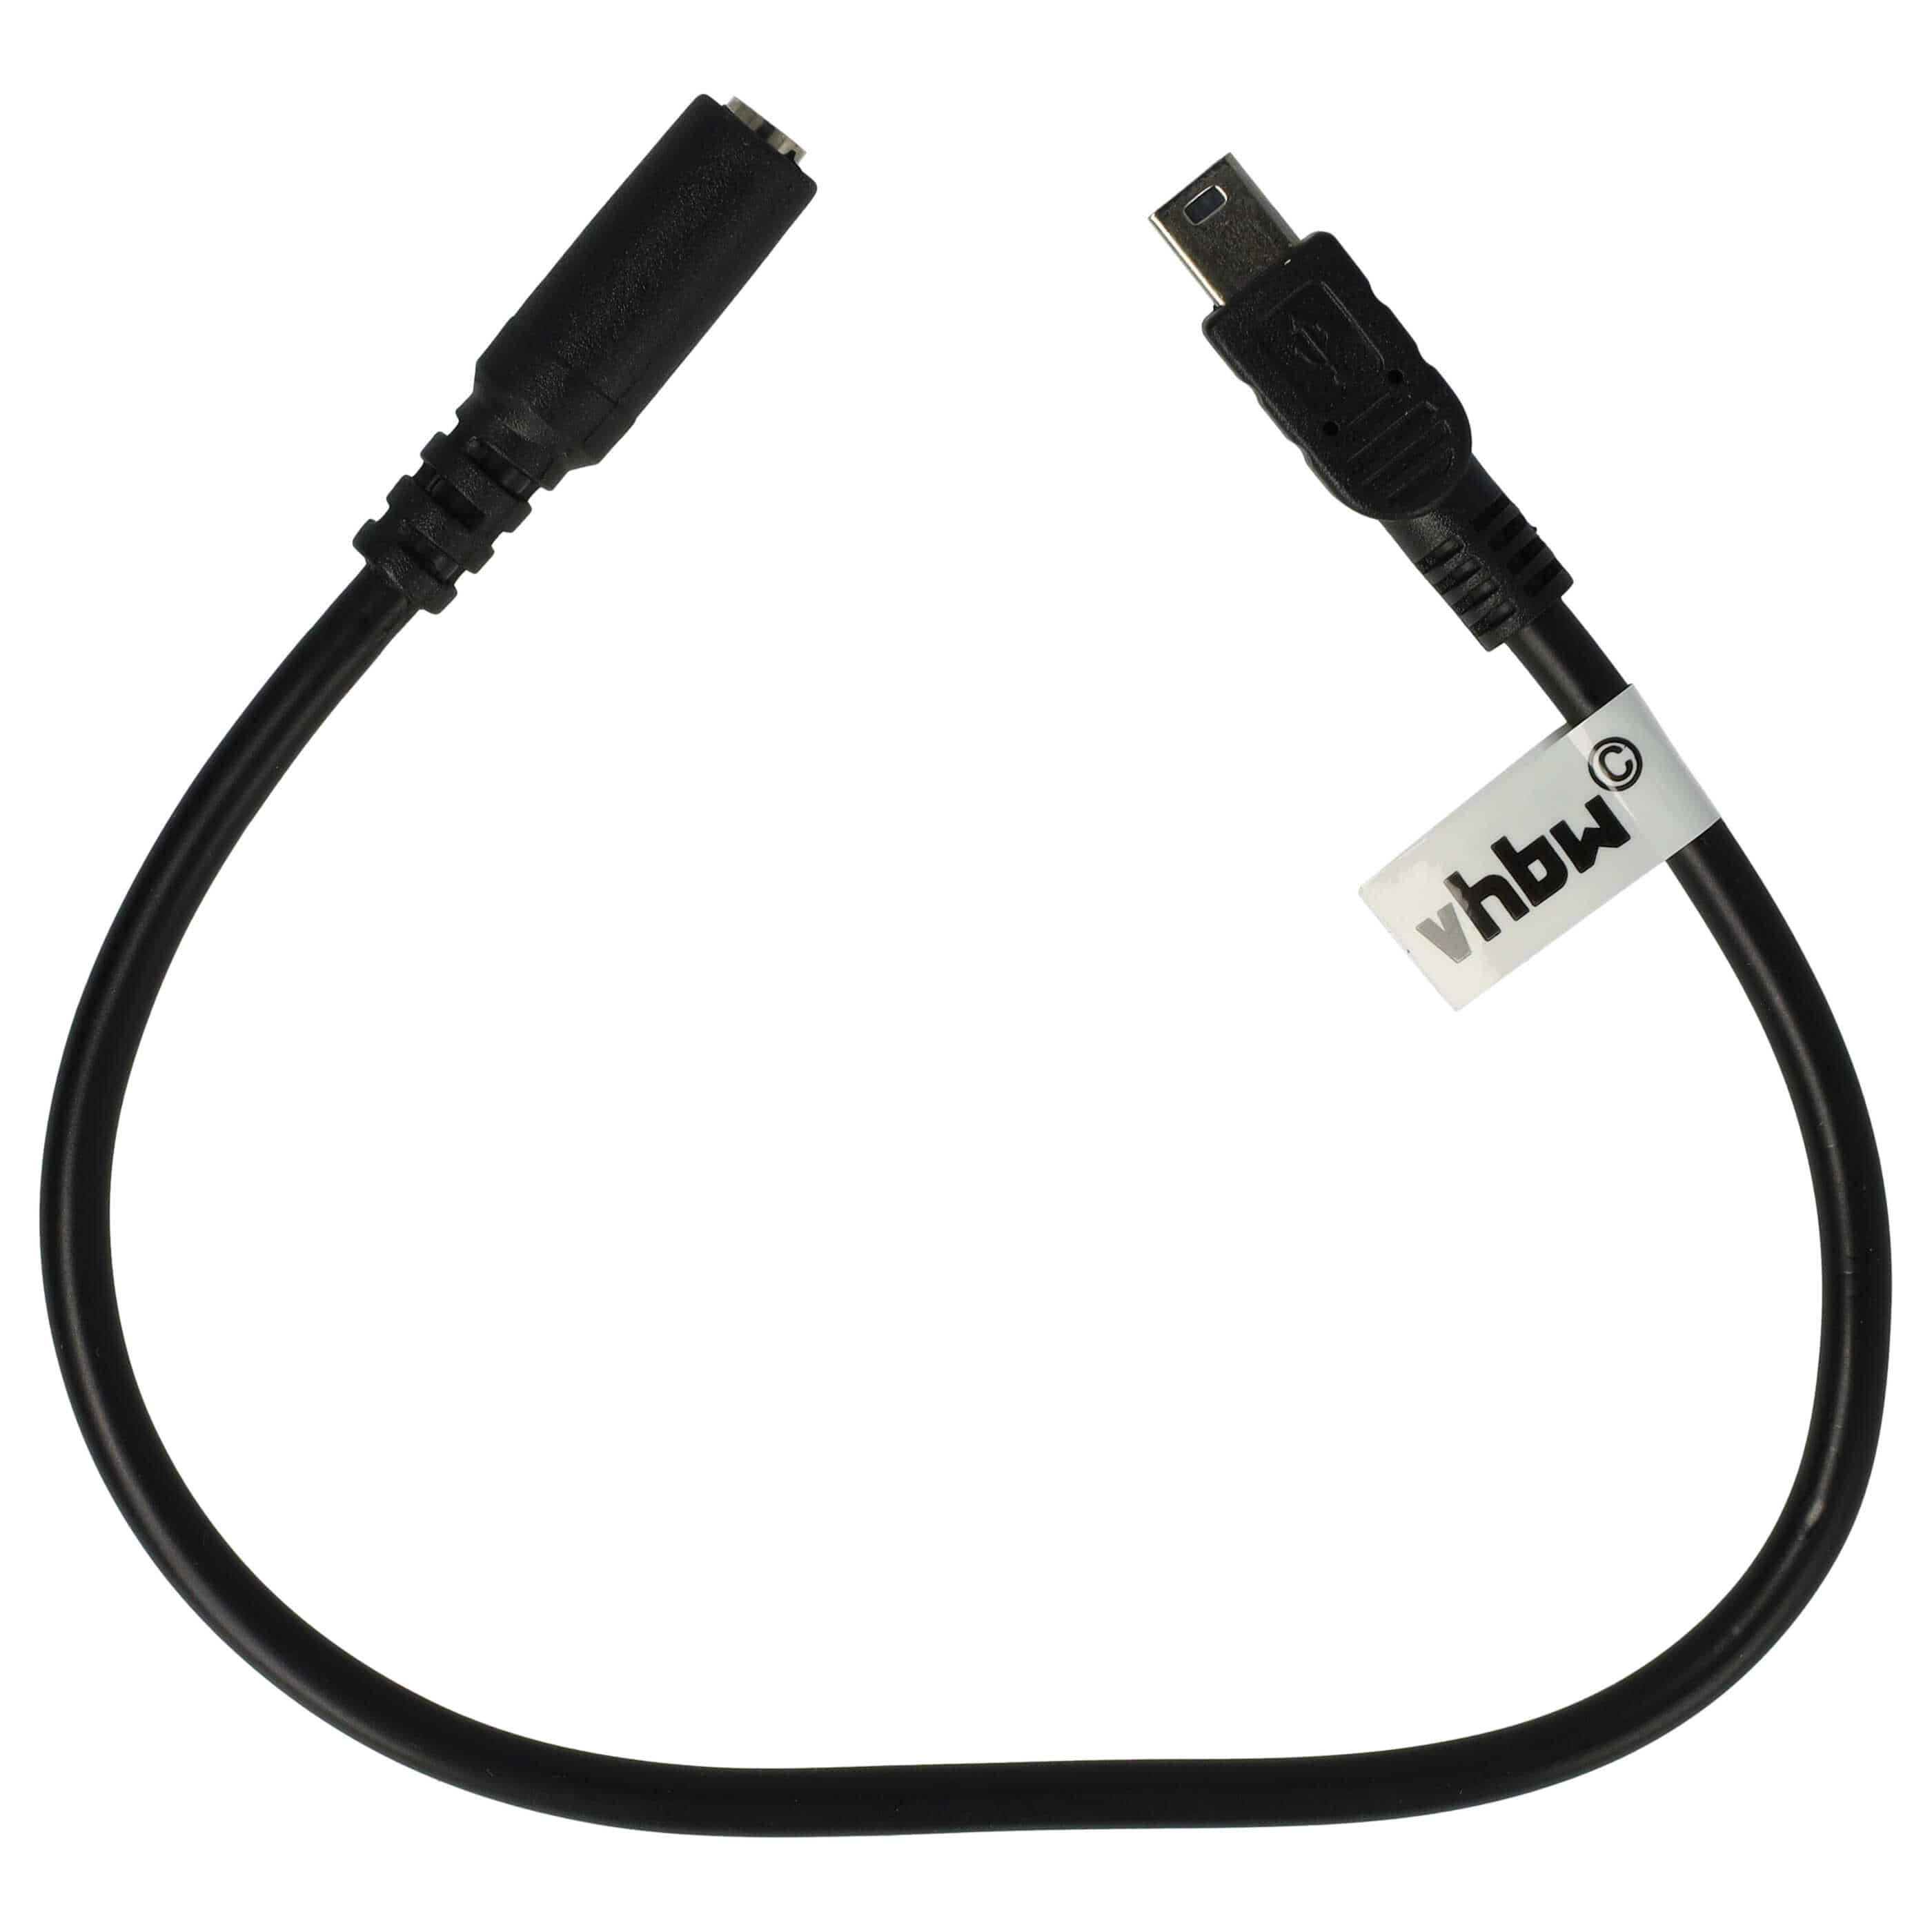 Przejściówka mini USB na gniazdo jack do GoPro Hero ActionCam i innych modeli - adapter na mikrofon